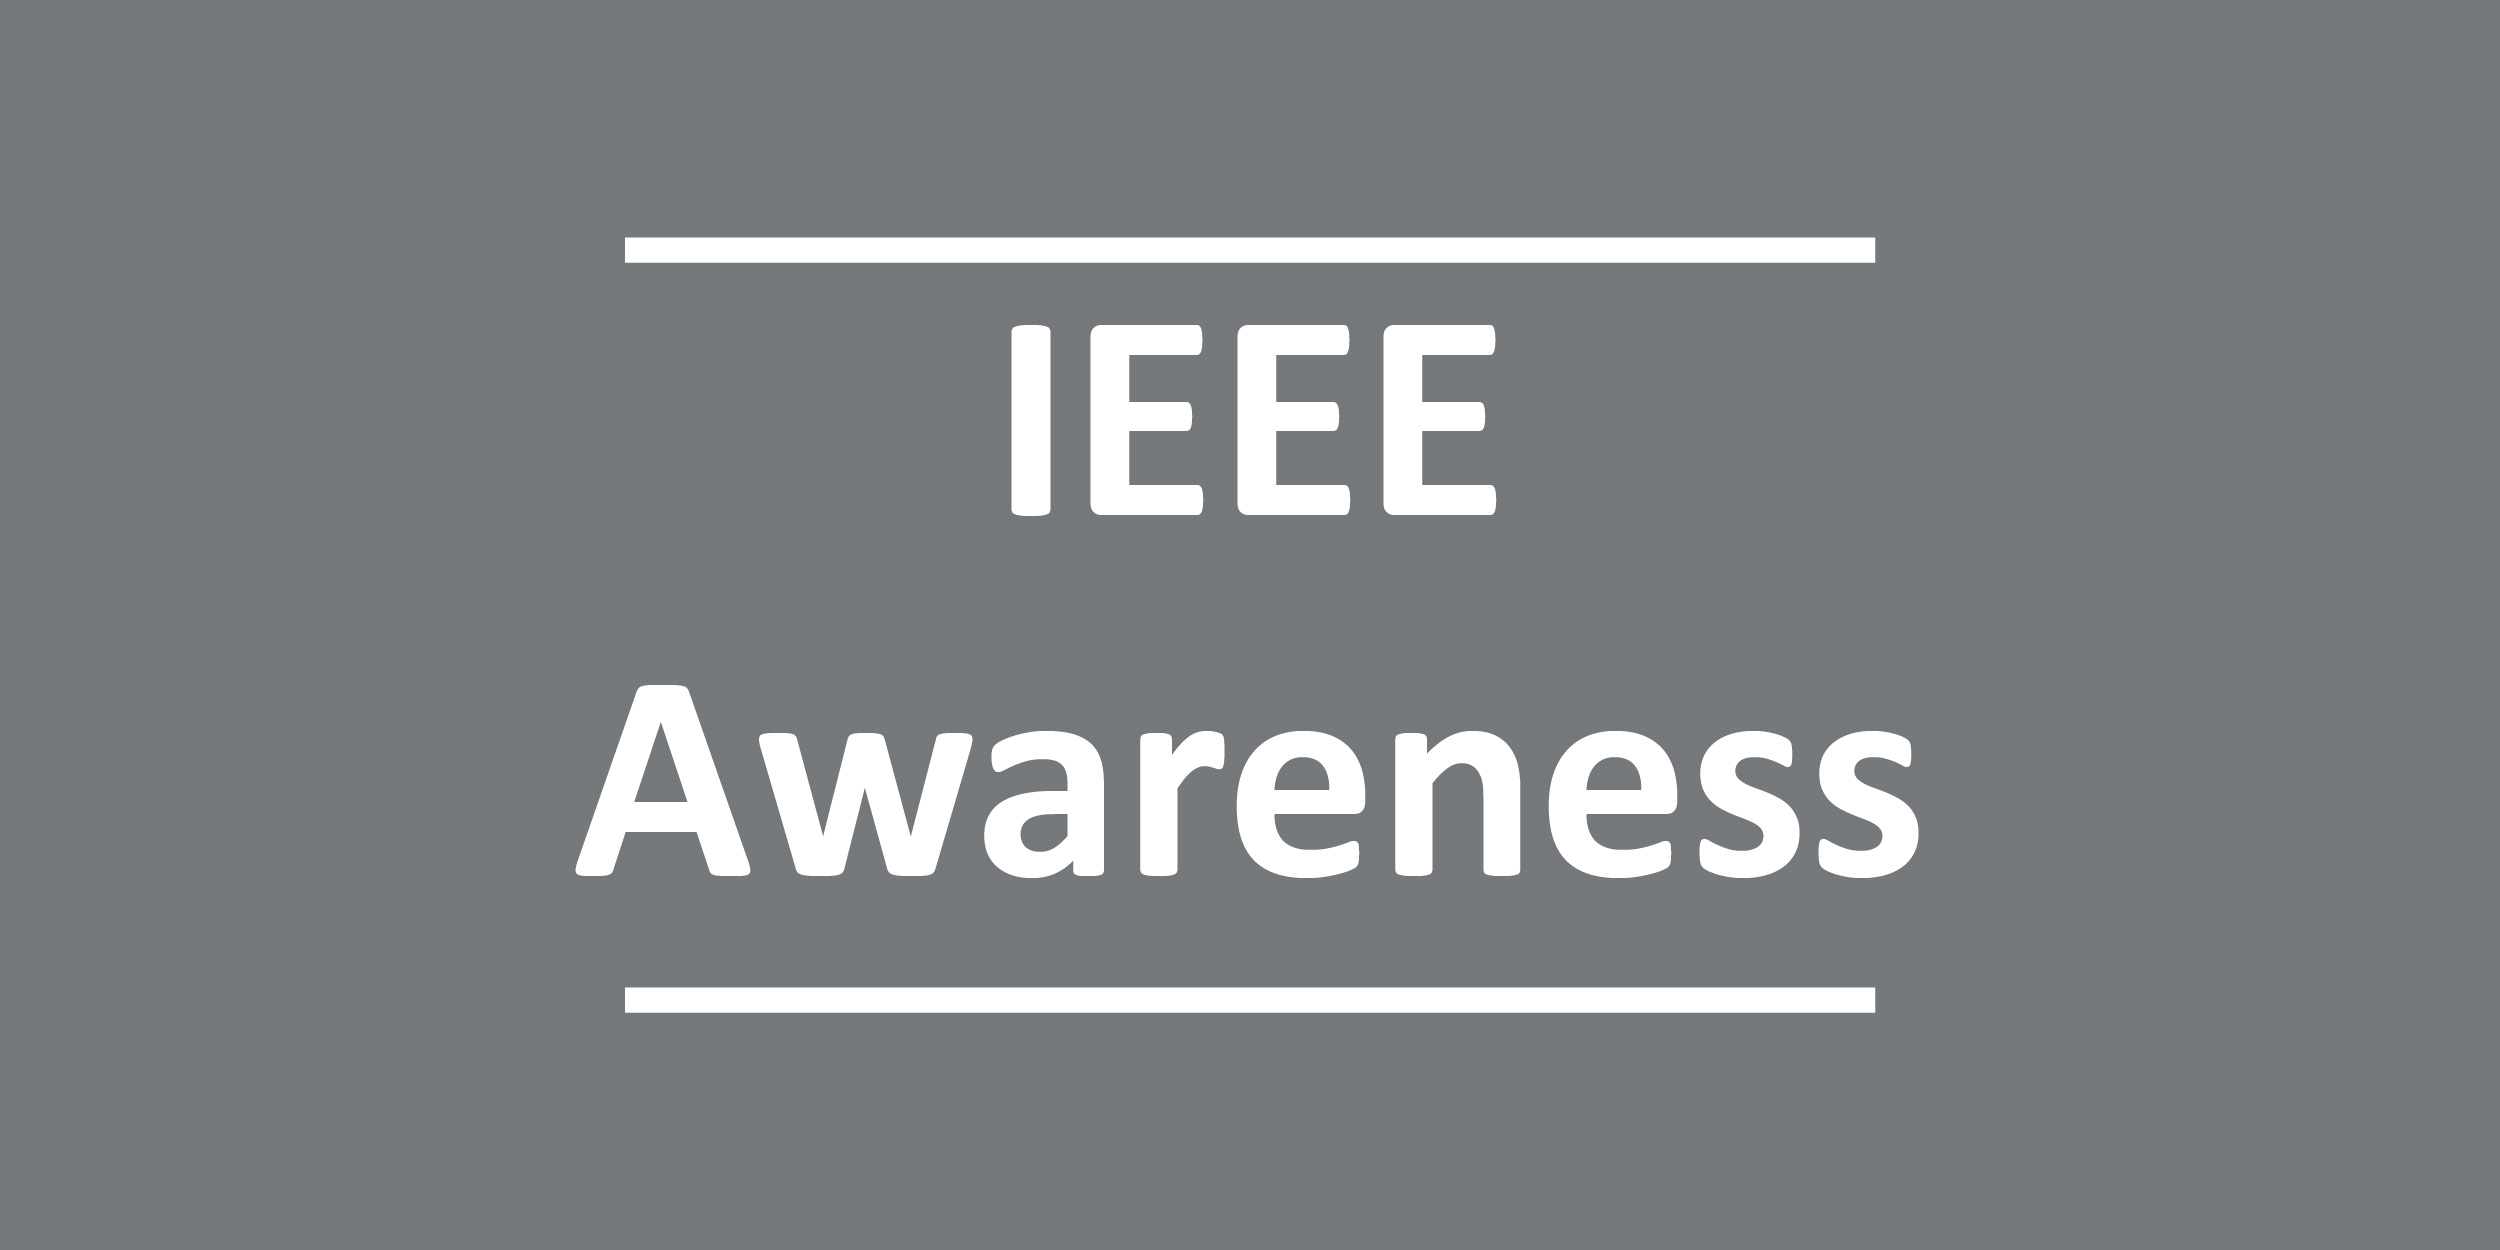 IEEE Awareness